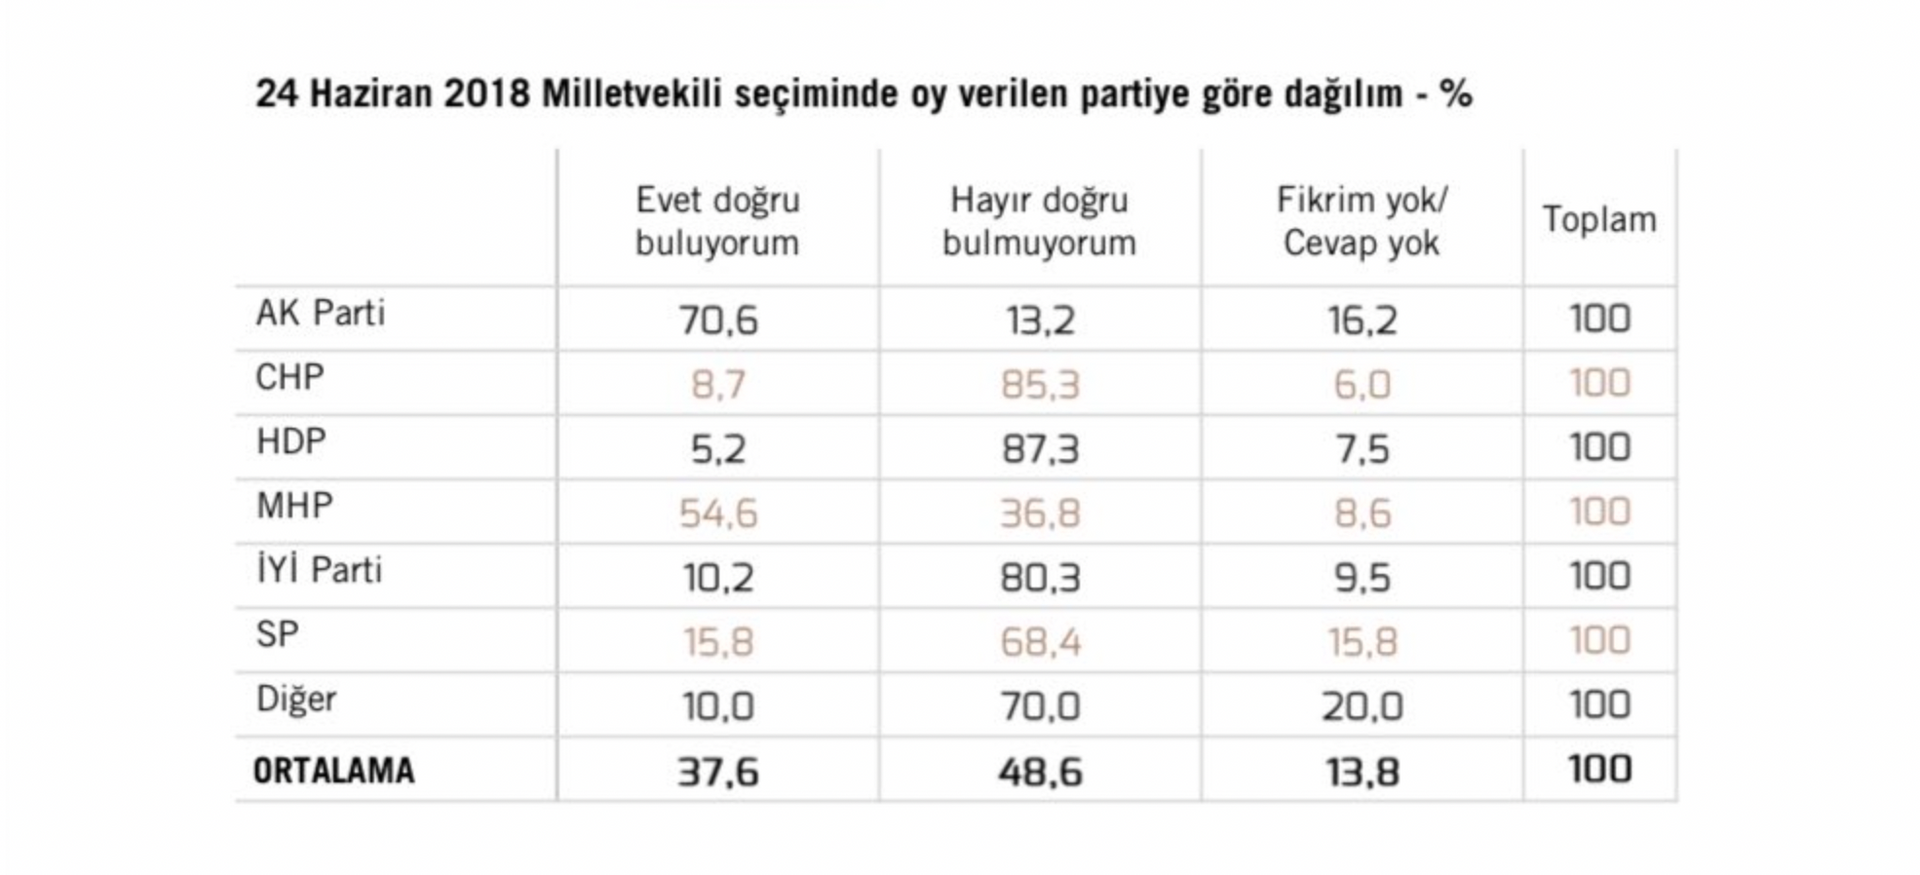 Sencar'ın paylaşımında, cevapların 24 Haziran 2018'deki milletvekili seçiminde oy verilen partiye göre dağılımı da yer aldı. - Sputnik Türkiye, 1920, 10.08.2021